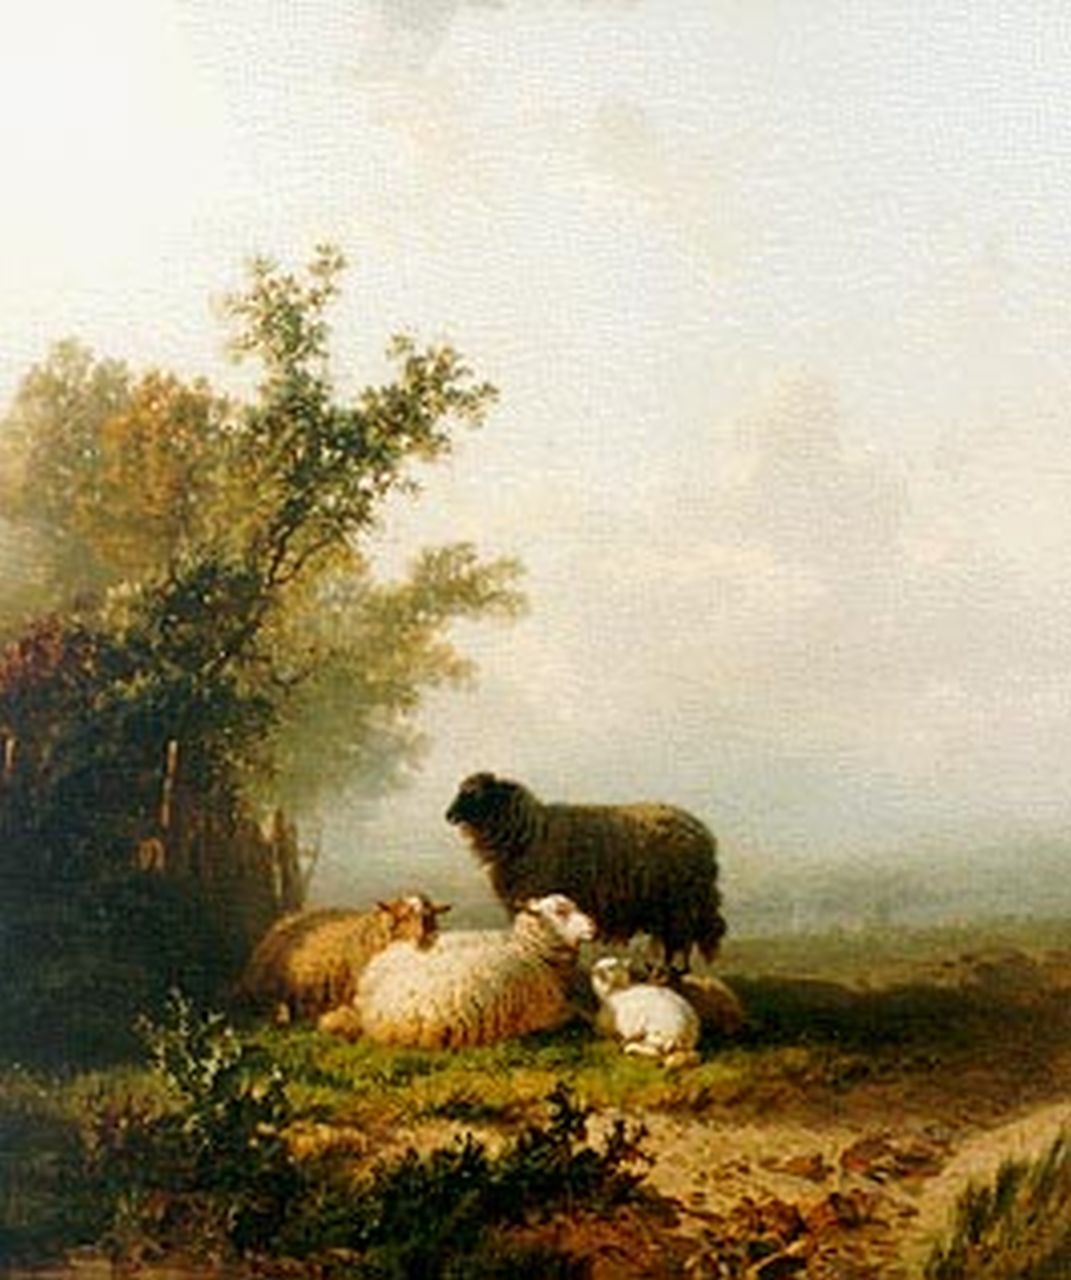 Bylandt A.E.A. van | Alfred Edouard Agenor van Bylandt, Sheep in a landscape, Öl auf Leinwand 60,0 x 51,0 cm, signed l.r.